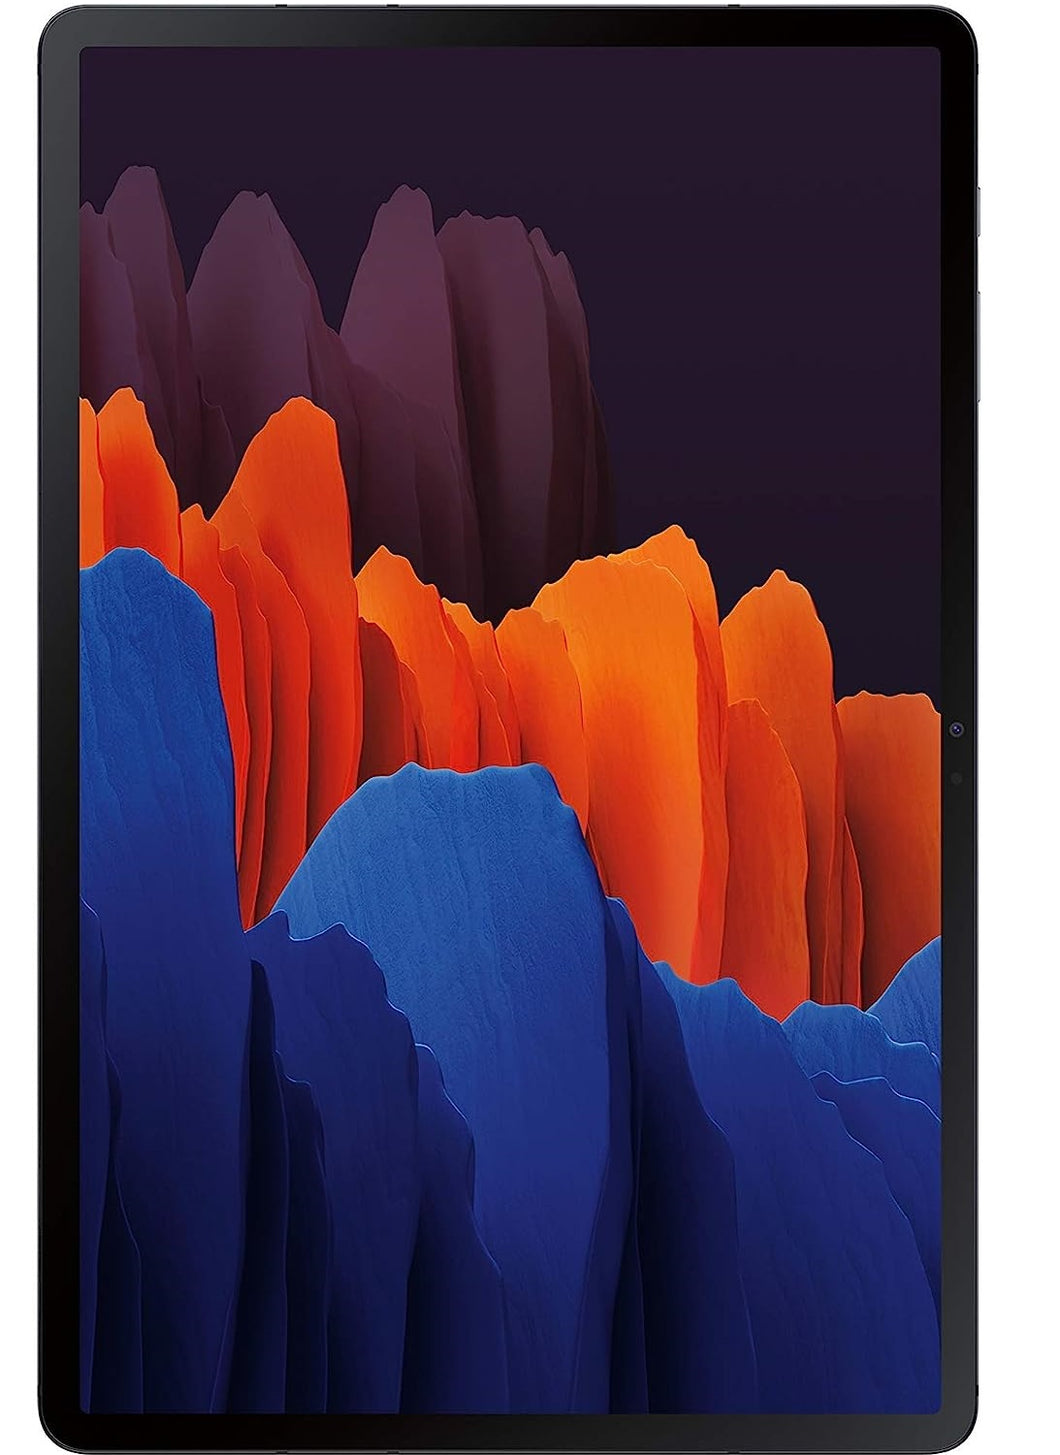 Galaxy Tab S7 Plus (2020) 256GB - Black - (Wi-Fi)